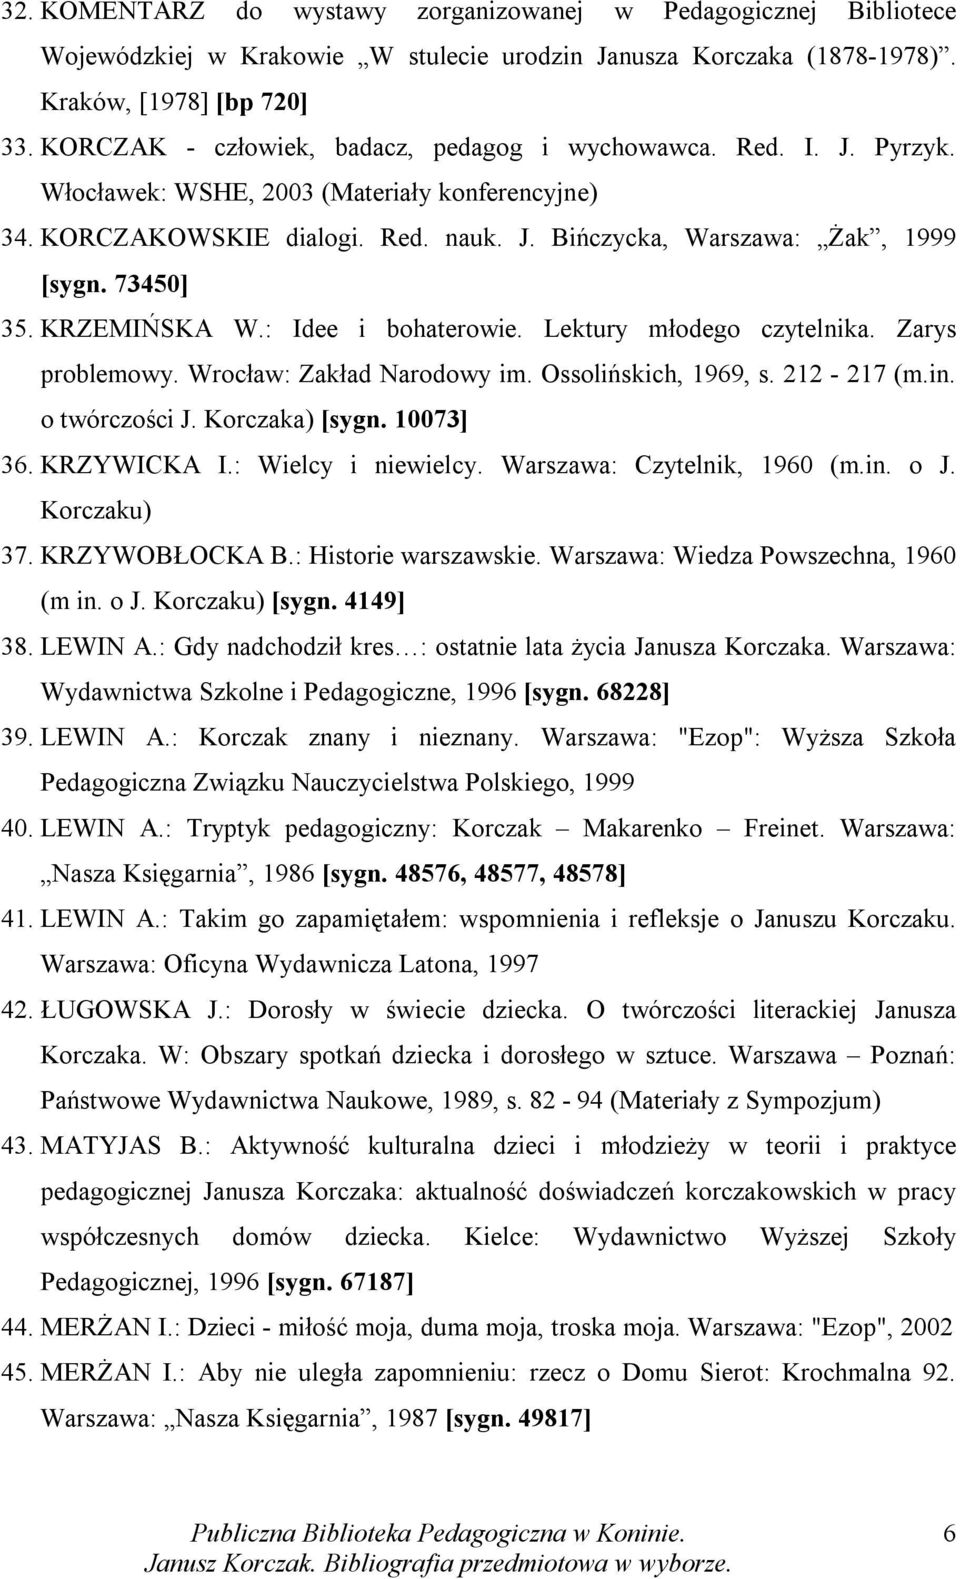 73450] 35. KRZEMIŃSKA W.: Idee i bohaterowie. Lektury młodego czytelnika. Zarys problemowy. Wrocław: Zakład Narodowy im. Ossolińskich, 1969, s. 212-217 (m.in. o twórczości J. Korczaka) [sygn.